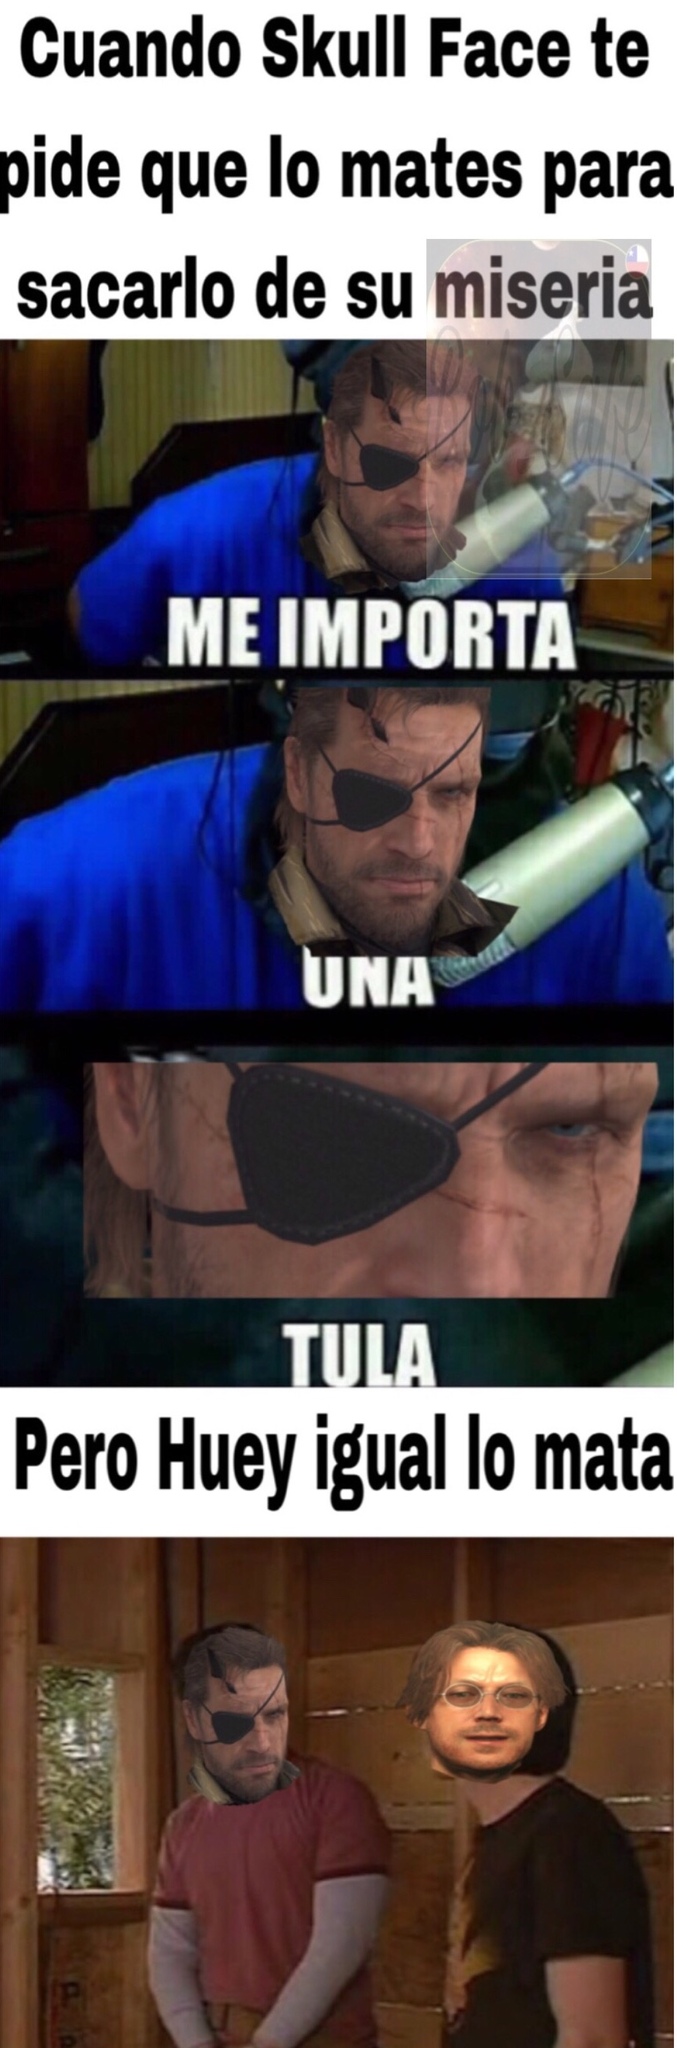 Metal Gear Solid V - meme